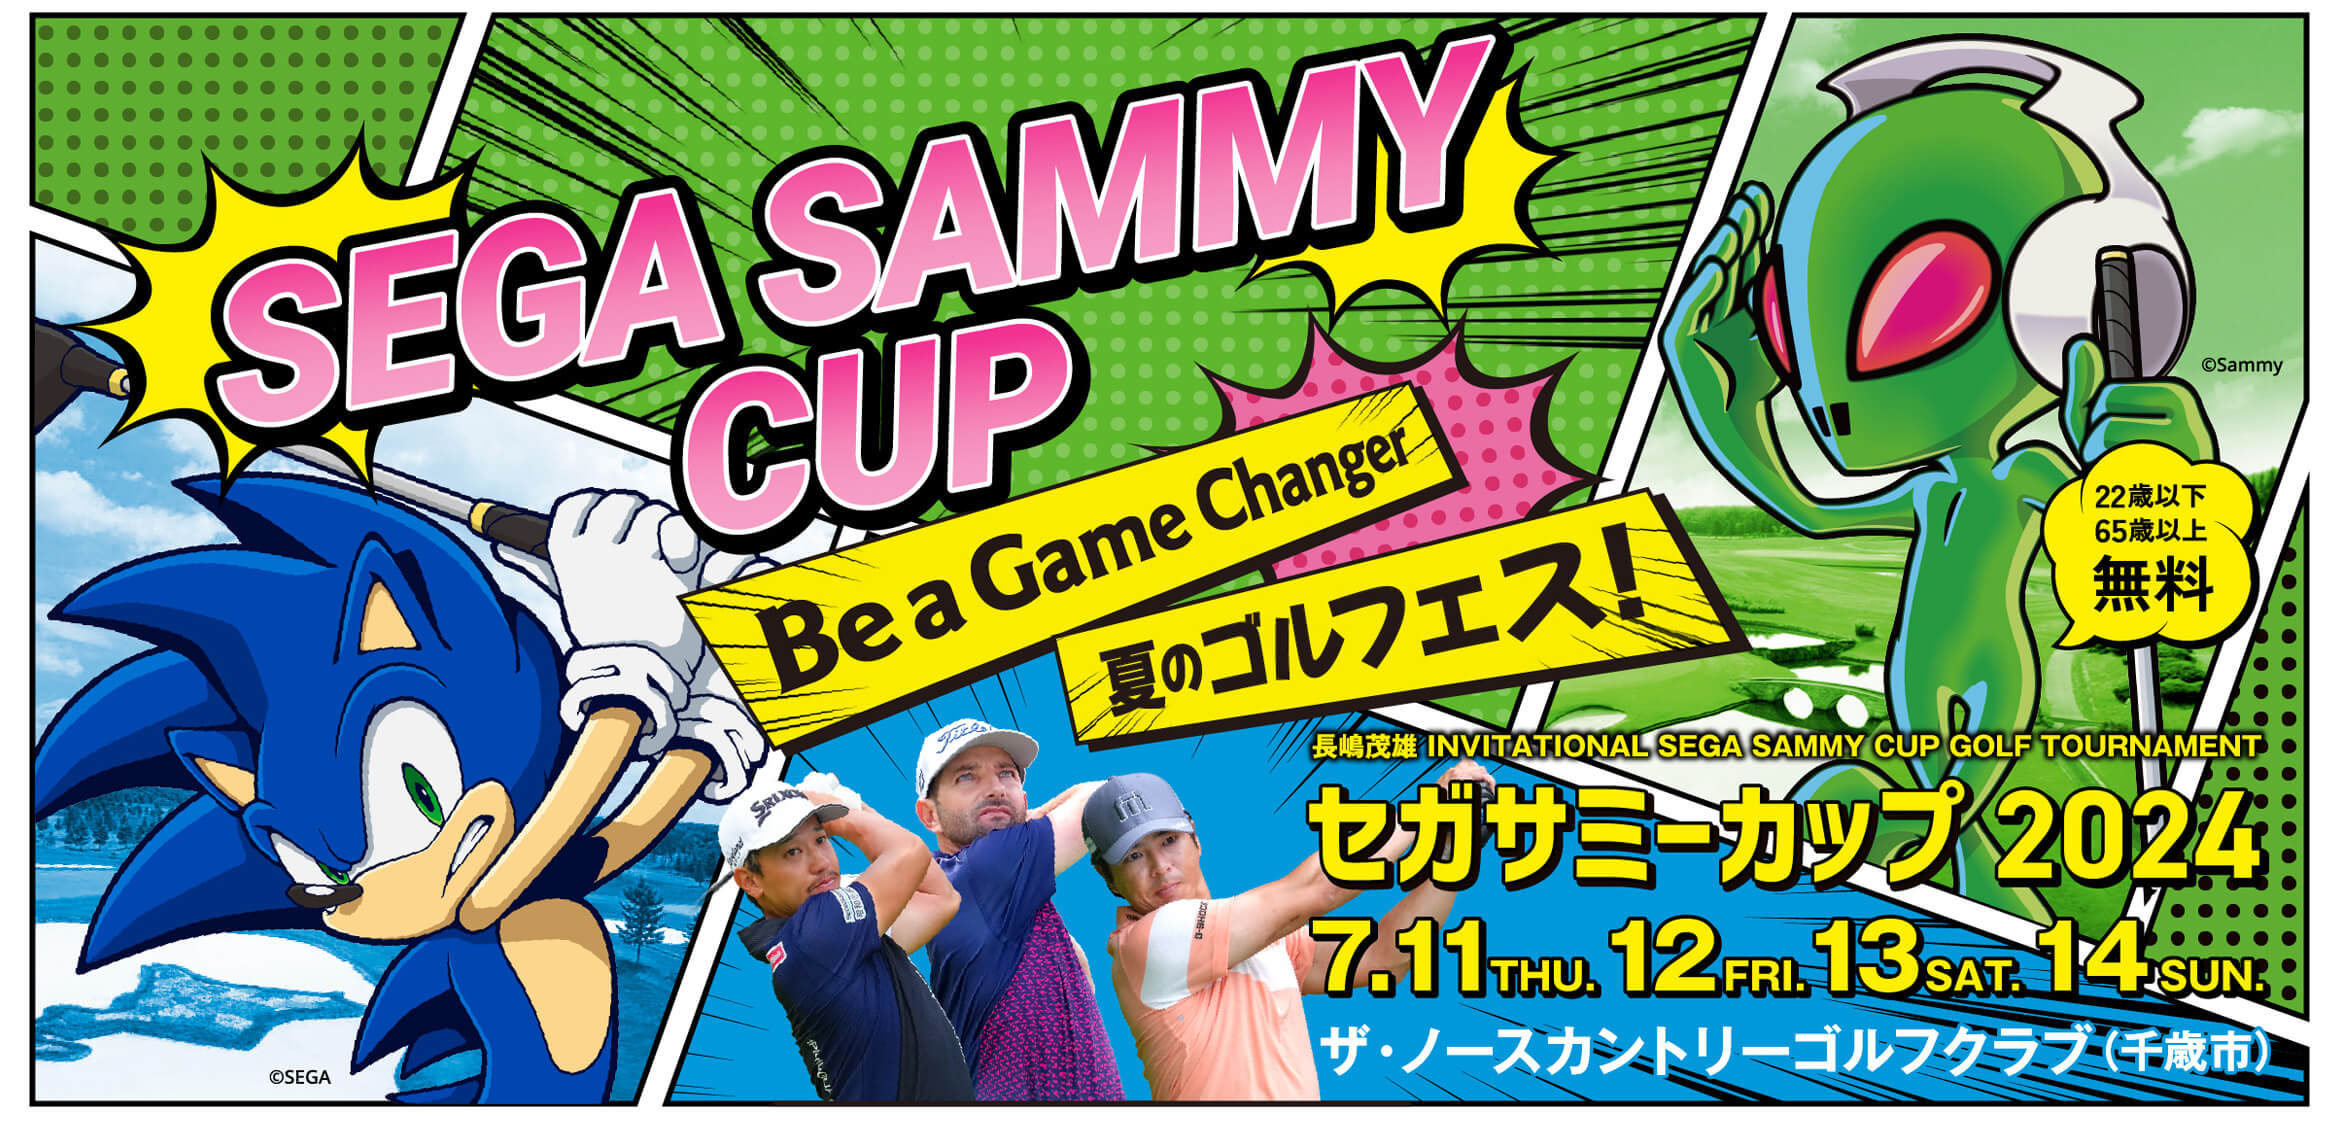 長嶋茂雄 INVITATIONAL SEGA SAMMY CUP GOLF TOURNAMENT セガサミーカップ2023 開催決定